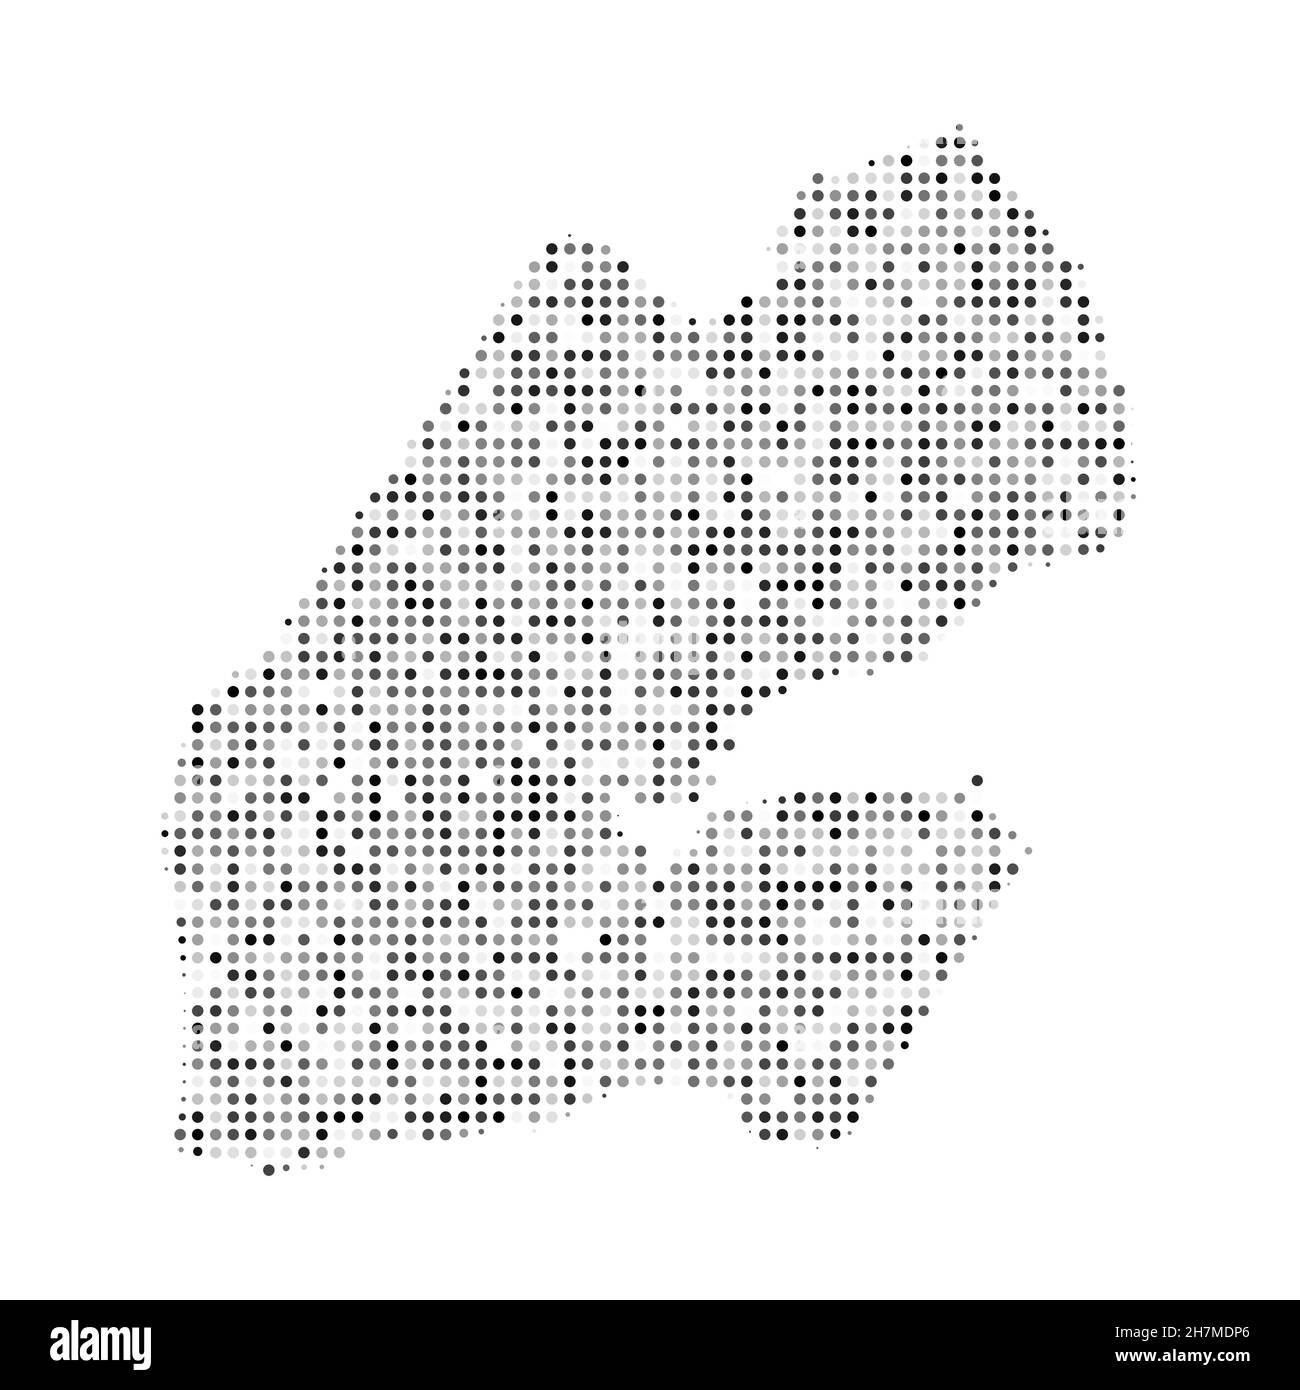 Mapa vectorial de Yibuti con efecto de semitonos en blanco y negro punteado abstracto. Mapa del país ilustración digital del vector del diseño punteado. Ilustración del Vector